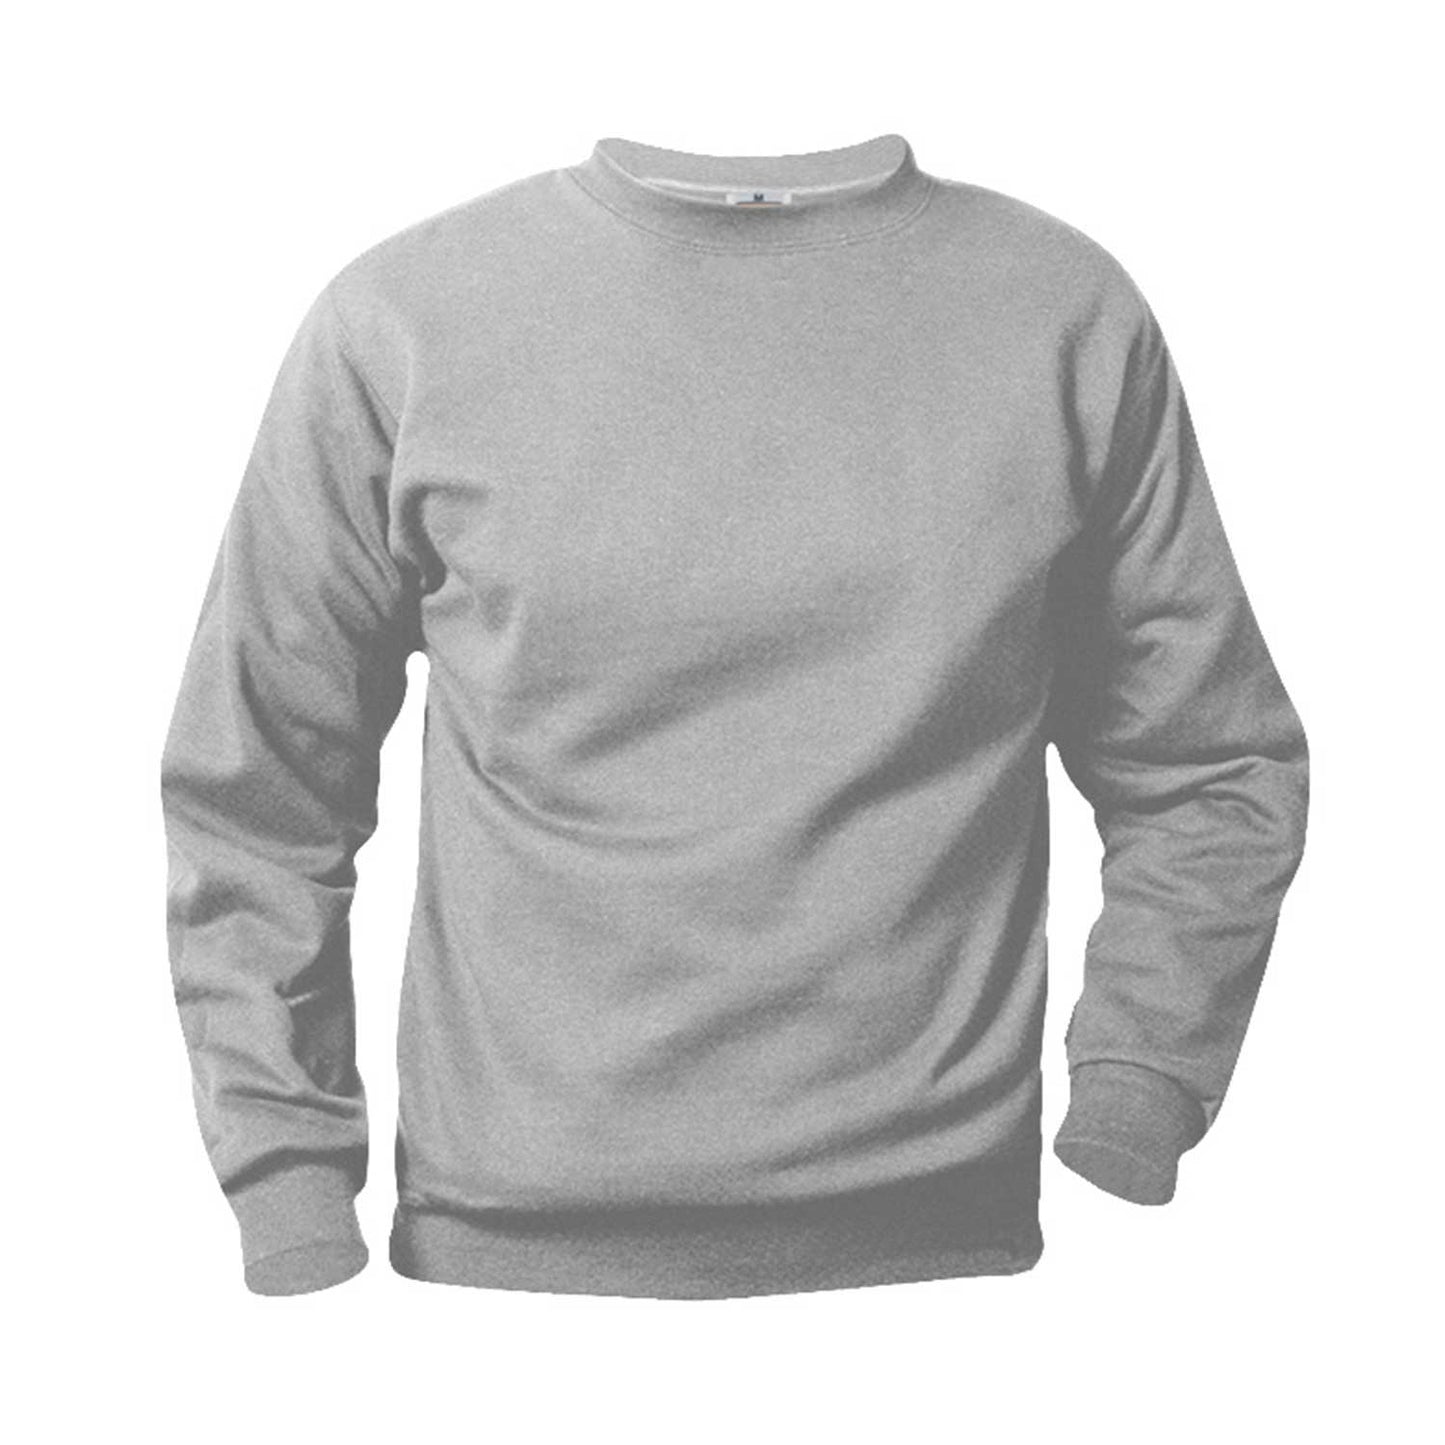 Unisex Crewneck Fleece Sweatshirt w/Logo - 1109